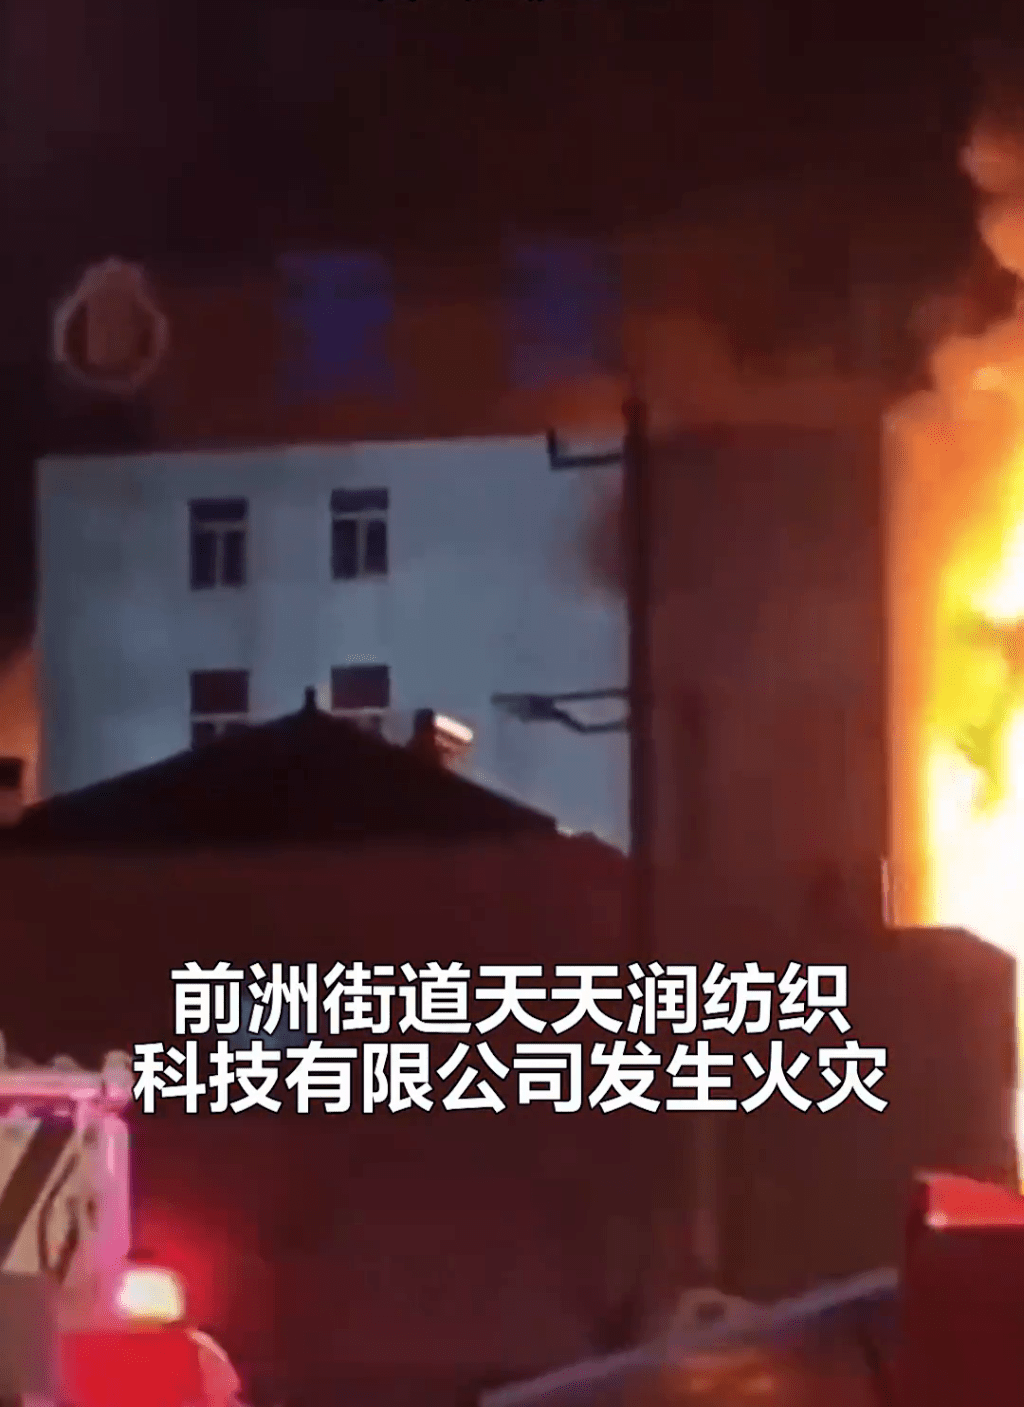 江苏无锡市惠山区前洲街道天天润纺织科技有限公司发生一宗严重火灾事故。